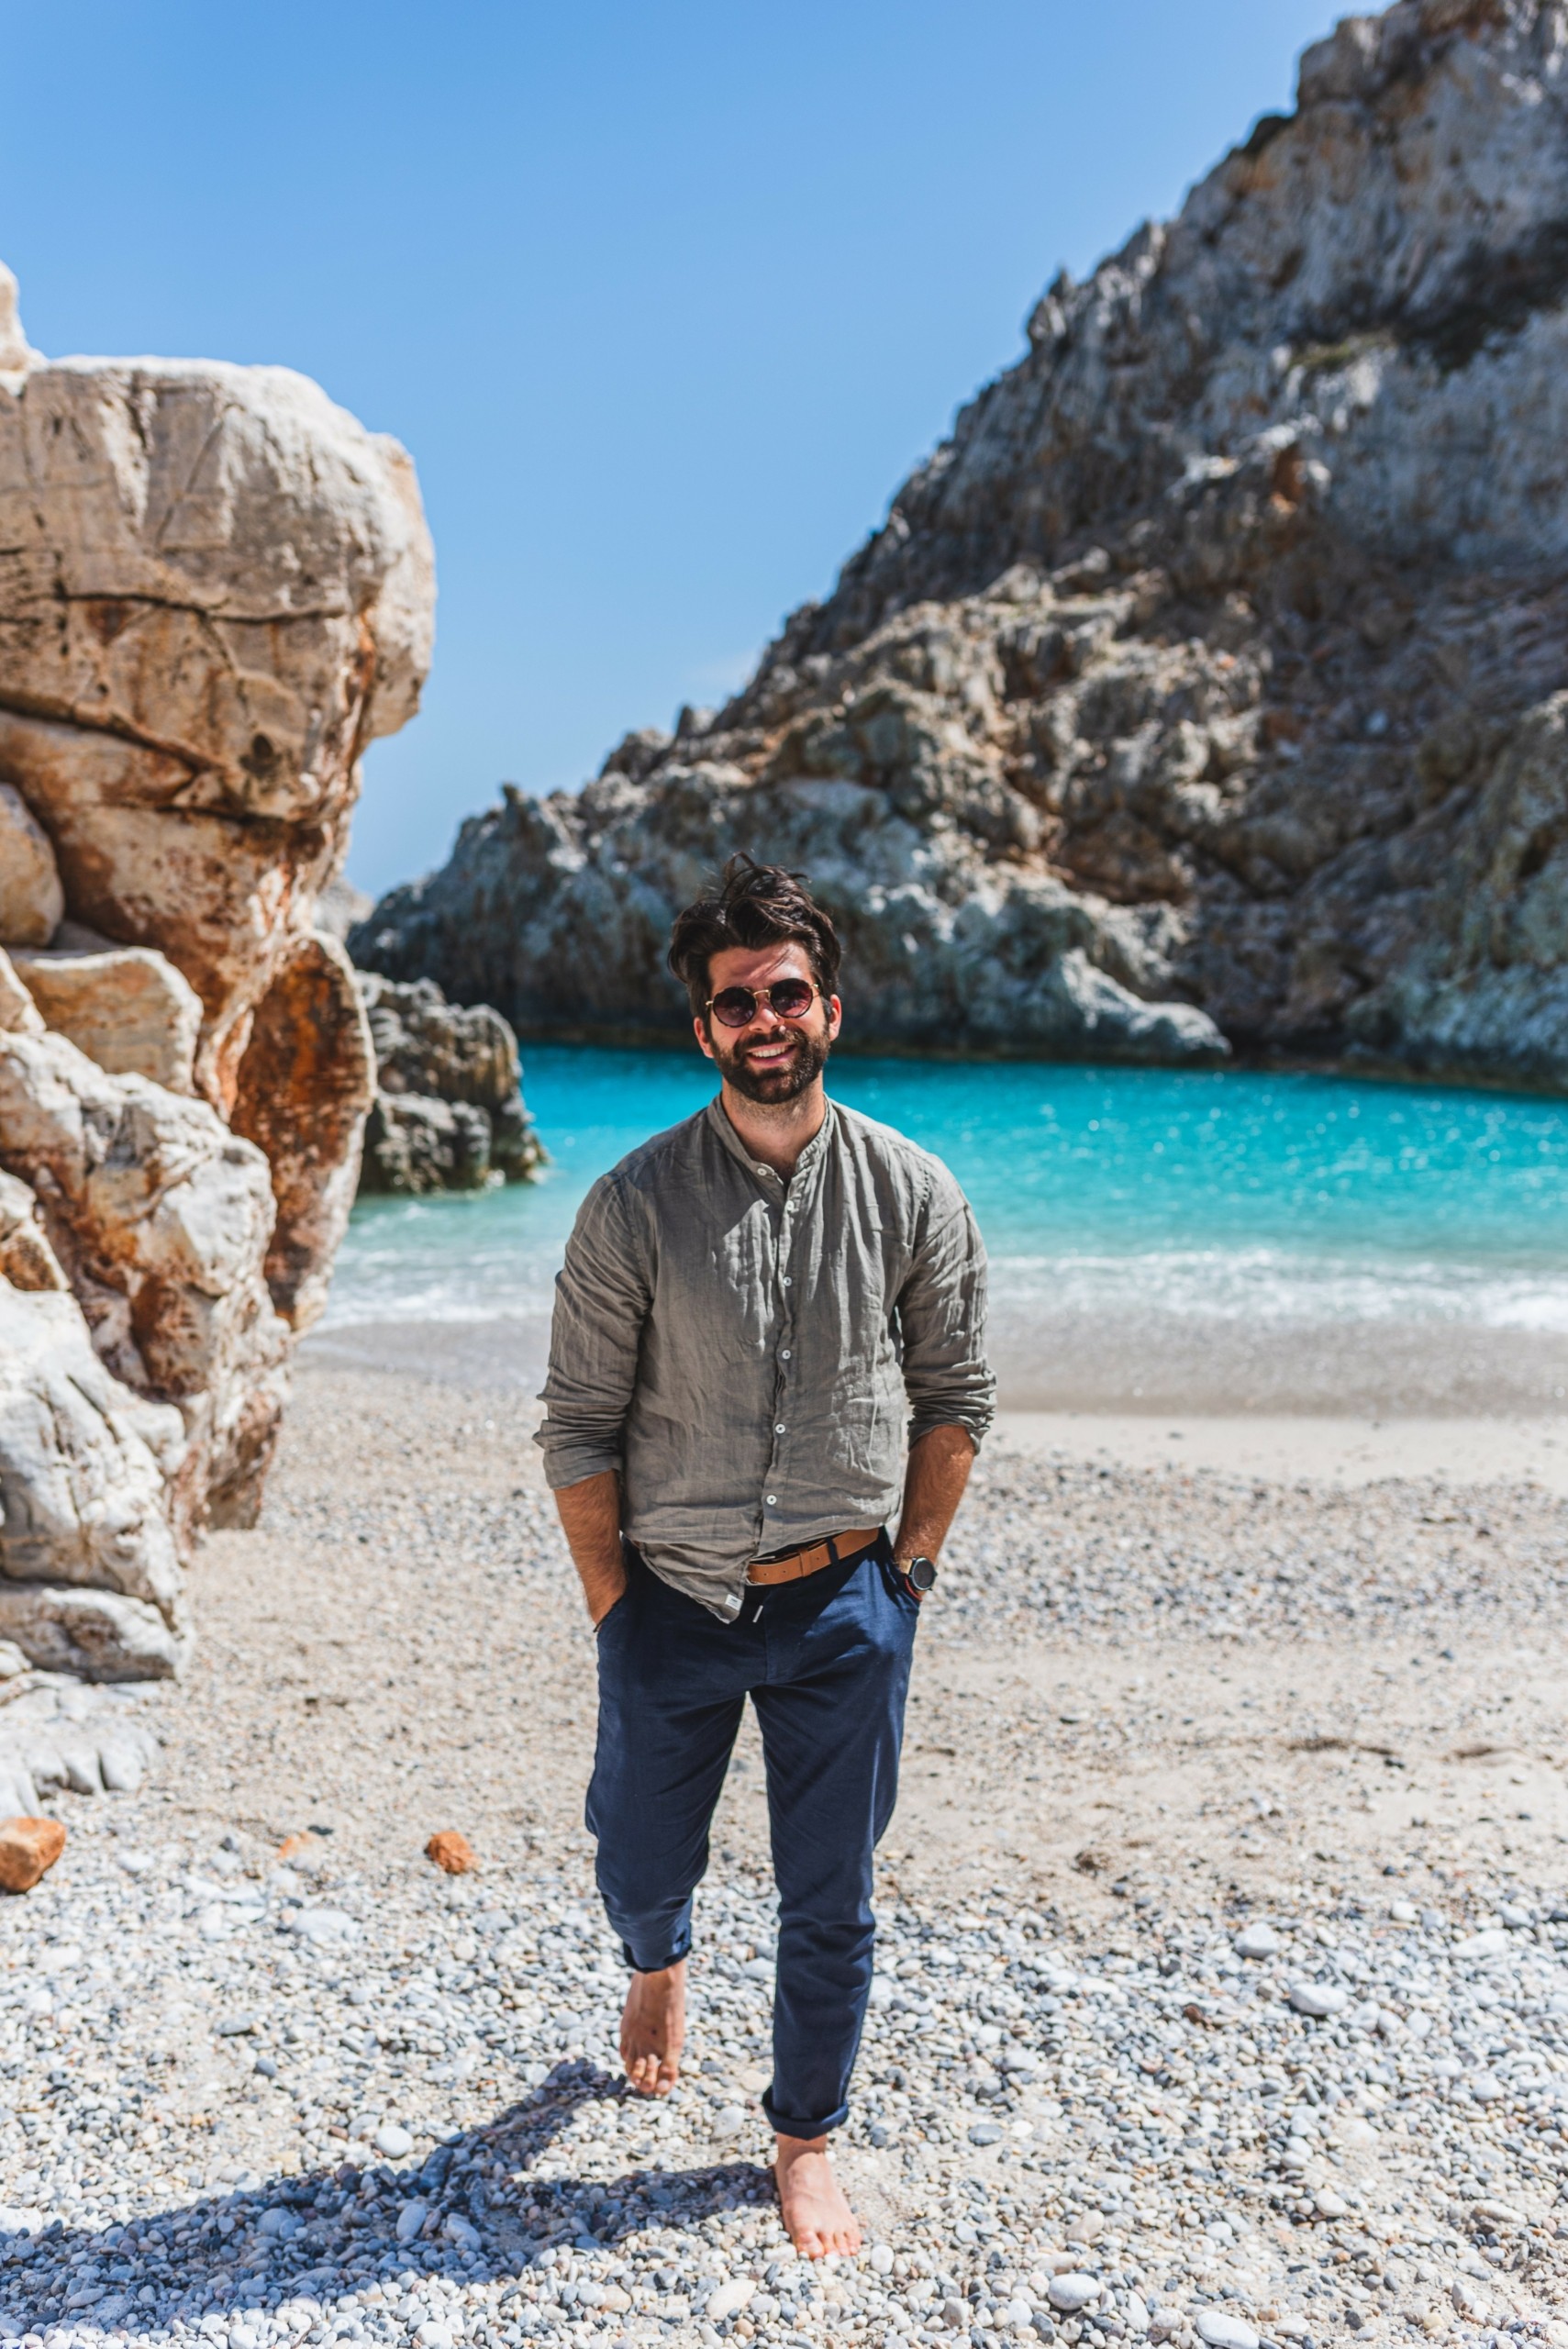 “Αυτή είναι η κορυφαία ελληνική παραλία” – Η συναρπαστική ιστορία πίσω από την έκδοση 100 Μαγευτικές Ελληνικές Παραλίες, που κυκλοφορεί την Κυριακή με το Θέμα